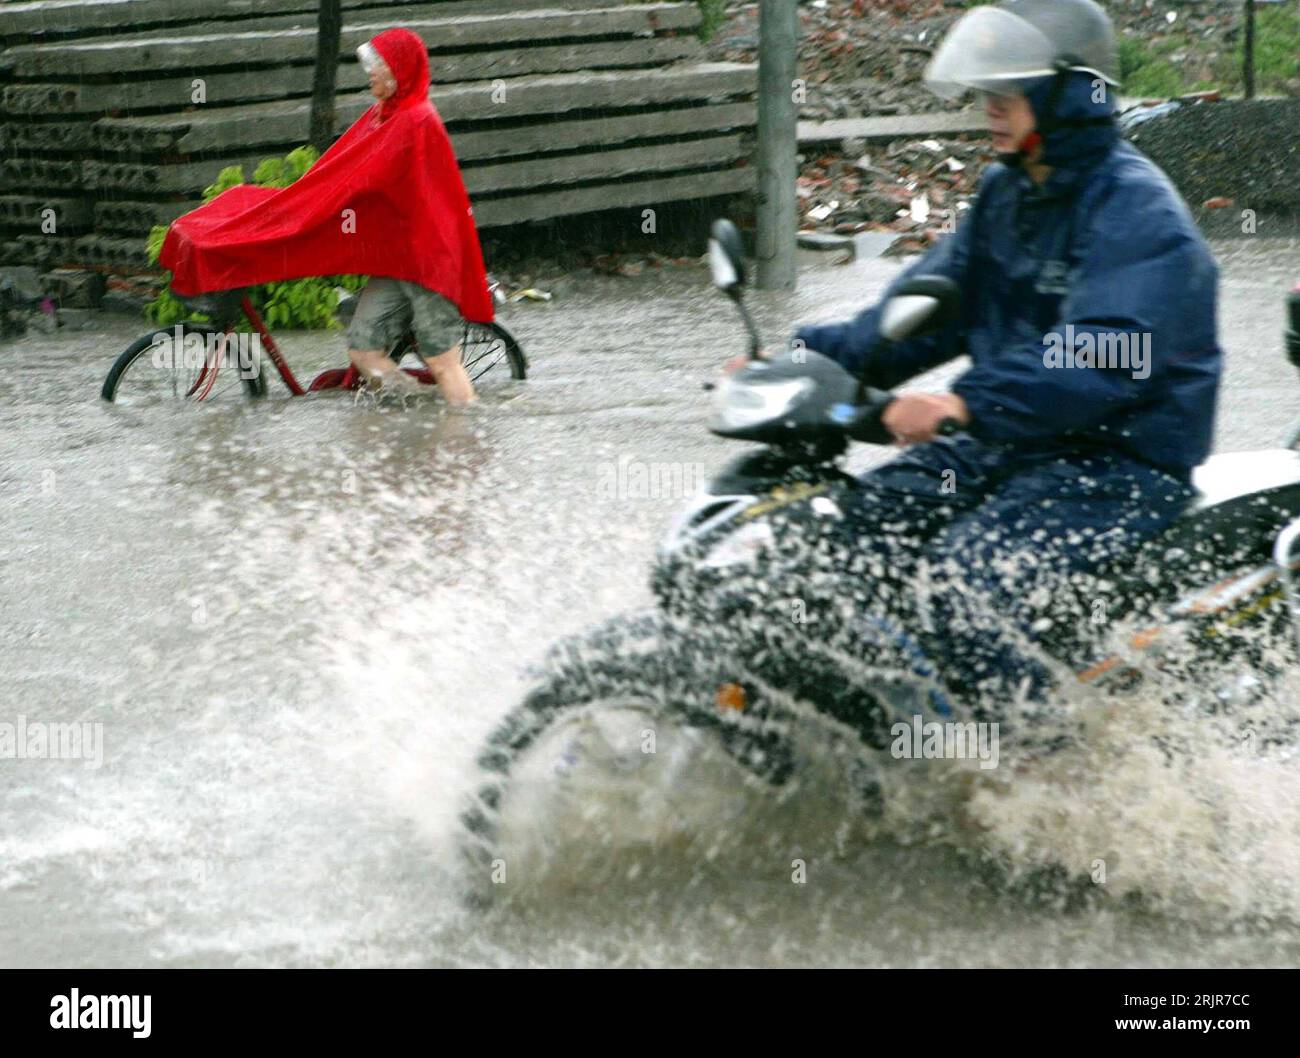 Bildnummer: 51320325  Datum: 05.07.2006  Copyright: imago/Xinhua Mann auf einem Motorroller und ein Fahrradfahrer fahren nach schweren Regenfällen über eine überflutete Straße in Shanghai - PUBLICATIONxNOTxINxCHN, Personen , Dynamik; 2006, Shanghai, Hochwasser, Überschwemmung, Überschwemmungen, Katastrophe, Katastrophen, Naturkatastrophen , Flut, Fluten, Flutkatastrophe, Flutkatastrophen, überschwemmt, überschwemmte, überflutet, Männer, Roller, Moped, Mopeds, Radfahrer; , quer, Kbdig, Gruppenbild, Seitenansicht, Perspektive, China,  , Straße, Verkehr, Wetter, Unwetter Stock Photo